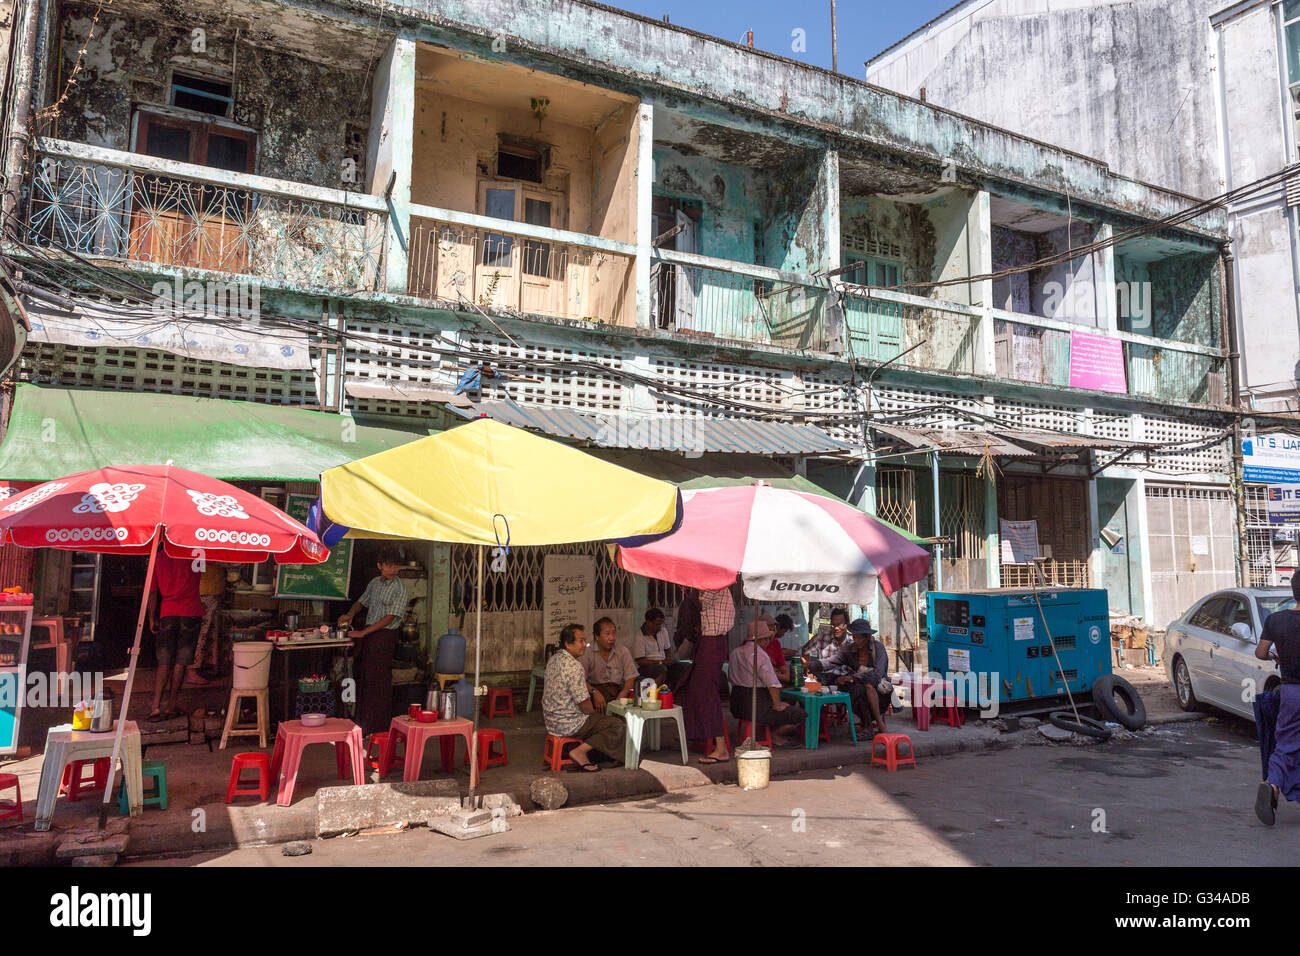 Menschen, Geschäfte und Cafés in einer Straße von Yangon Yangon, Myanmar, Burma, Birma, Südasien, Asien Stockfoto